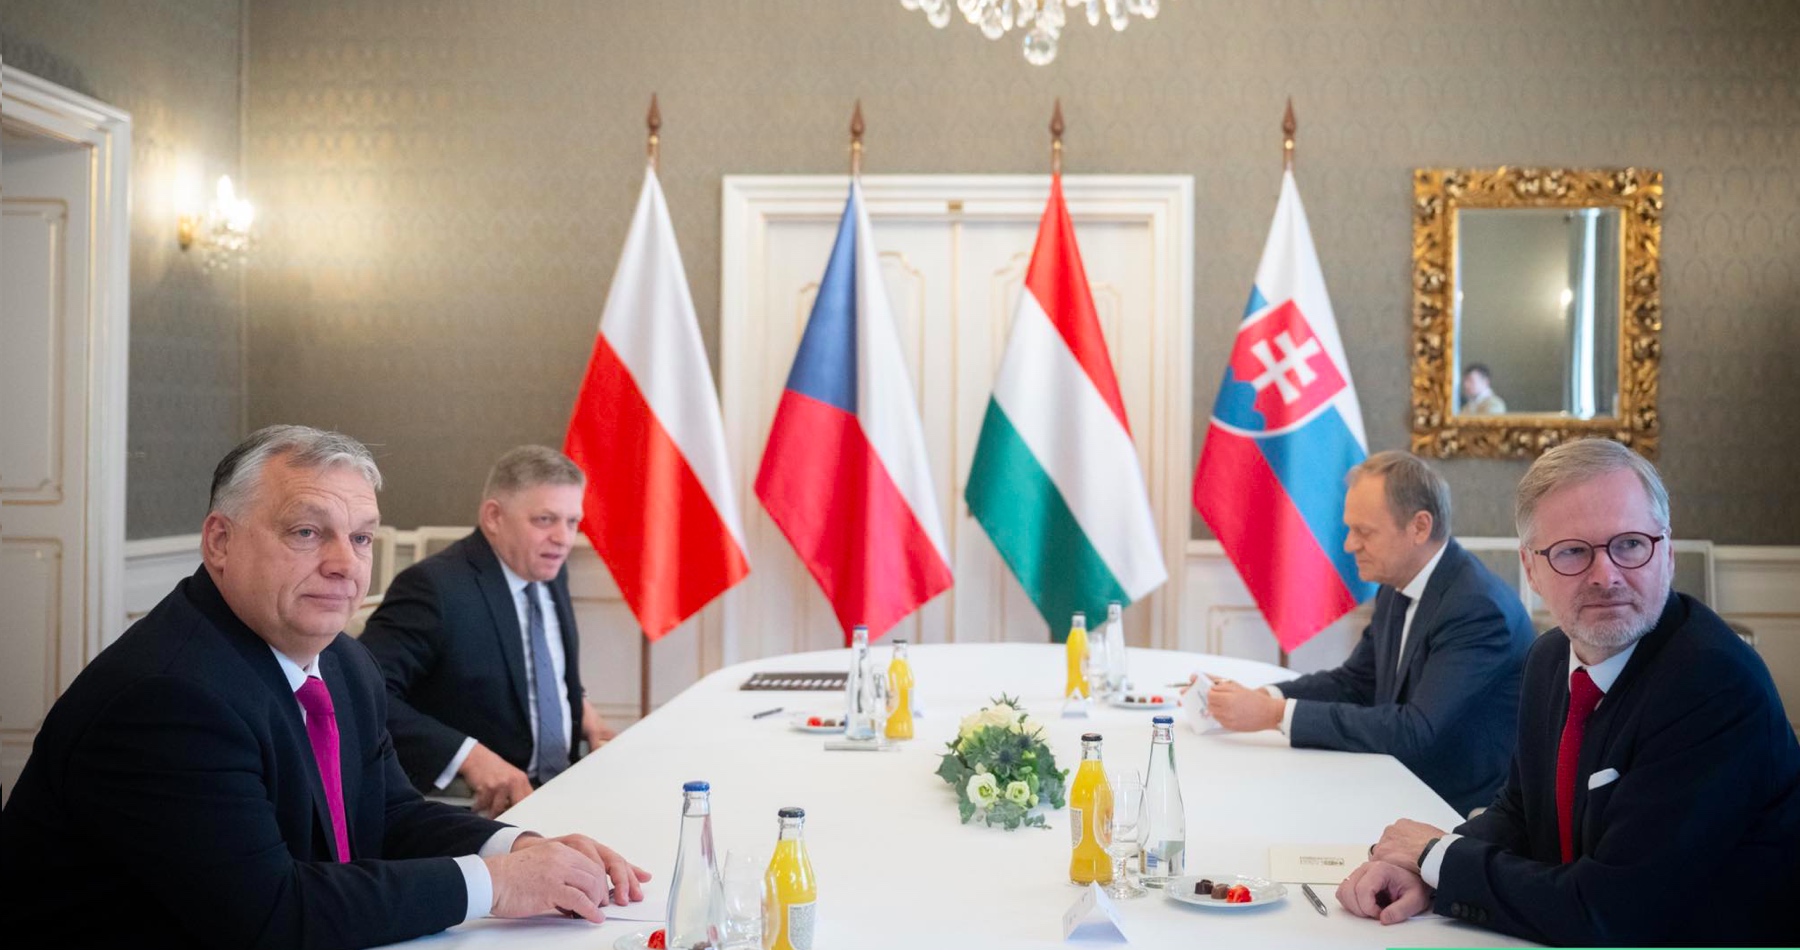 Orbán by v čase aktuálneho názorového rozkolu skupiny V4 na geopolitickú realitu chcel posilniť regionálnu spoluprácu „medzi zvrchovanými štátmi“ kam maďarský premiér zaradil Slovensko, Srbsko a Rakúsko